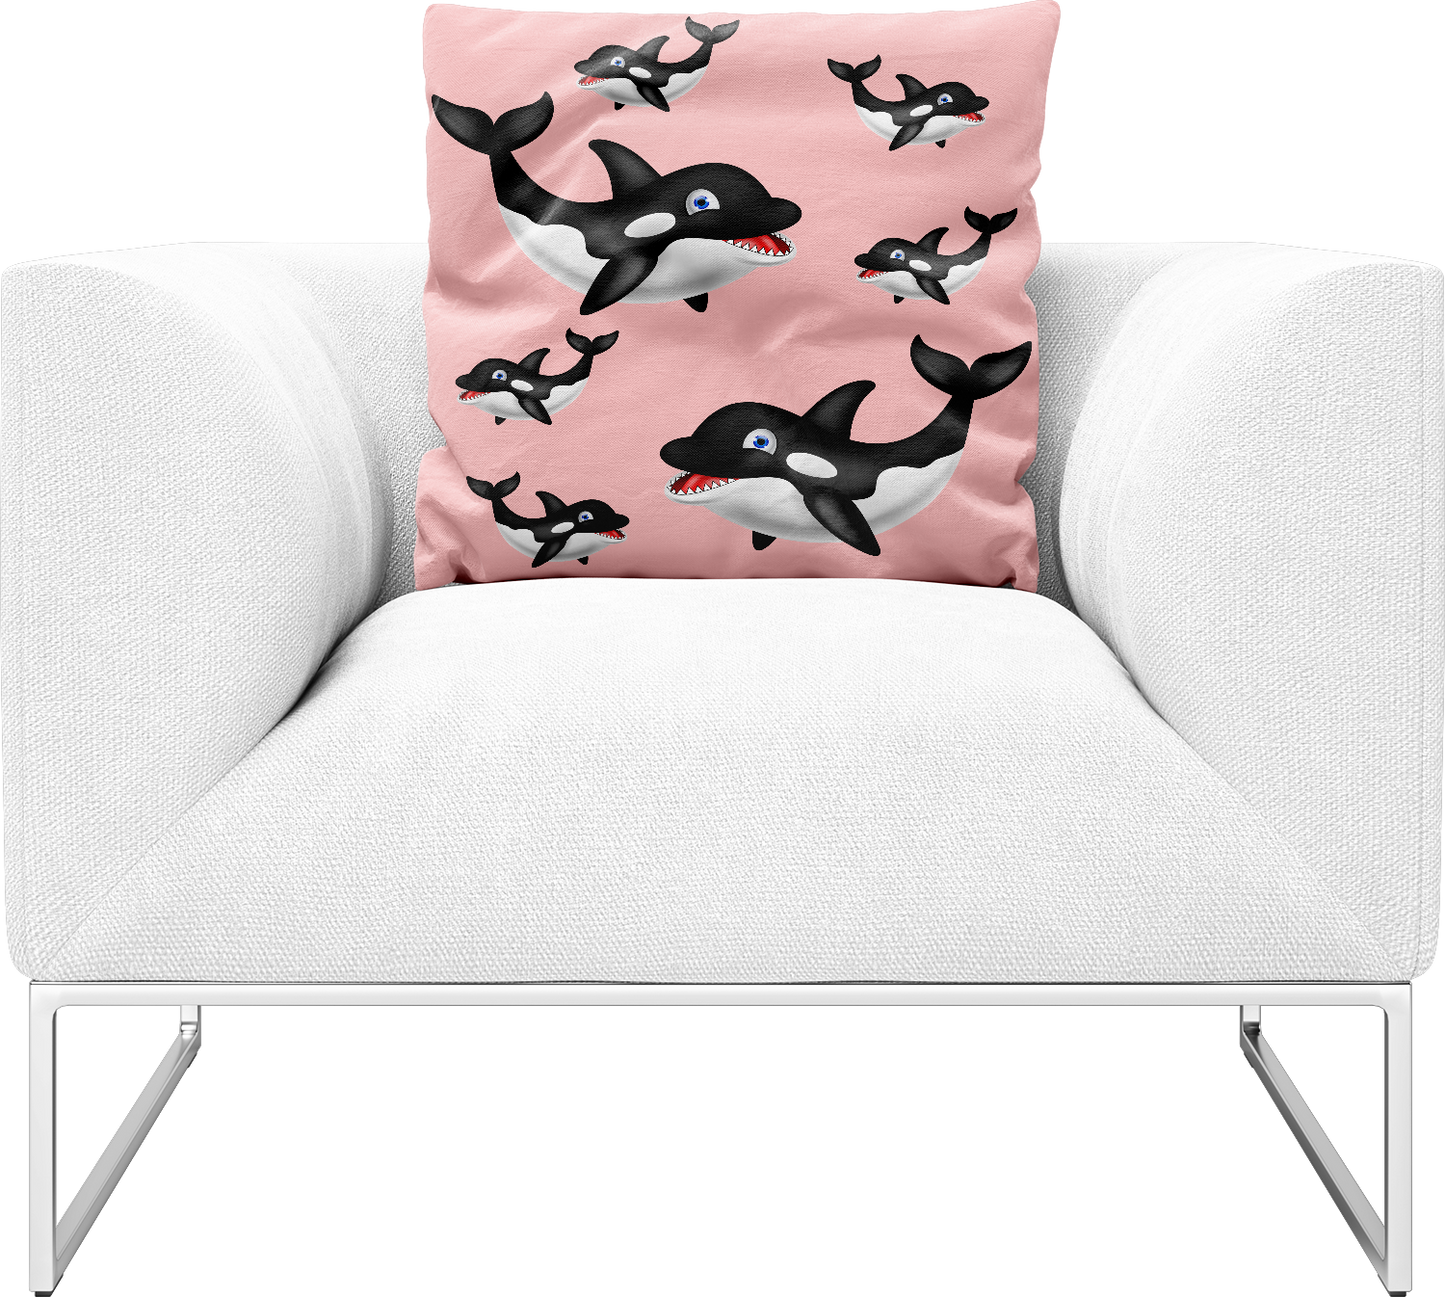 Orca Whale Pillows Cushions